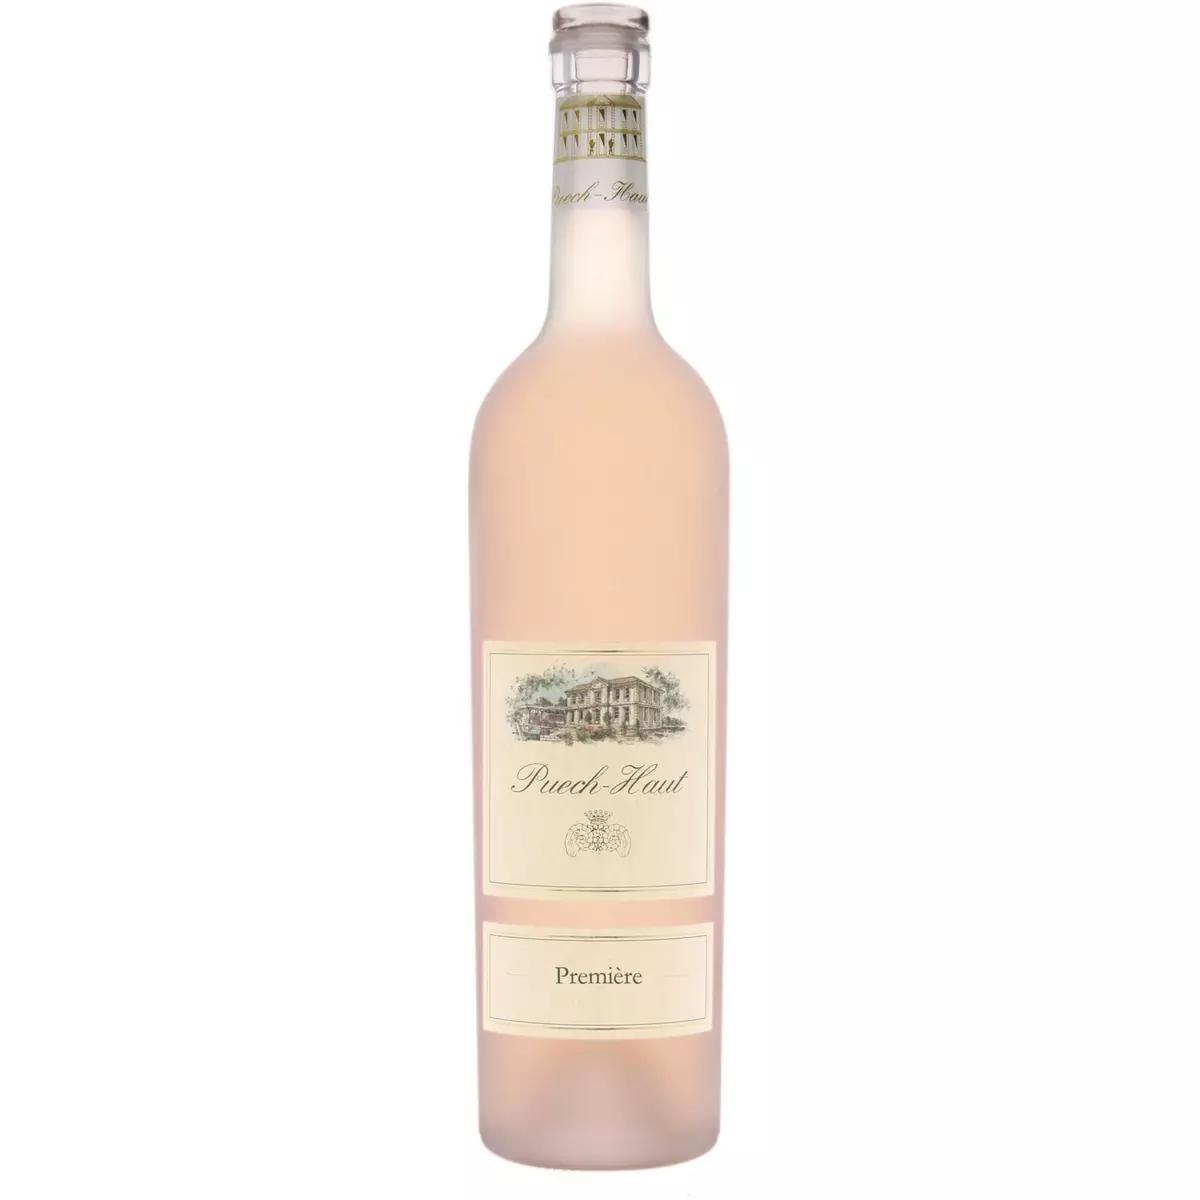 IGP Pays-d'Oc Puech-Haut Première rosé 75cl